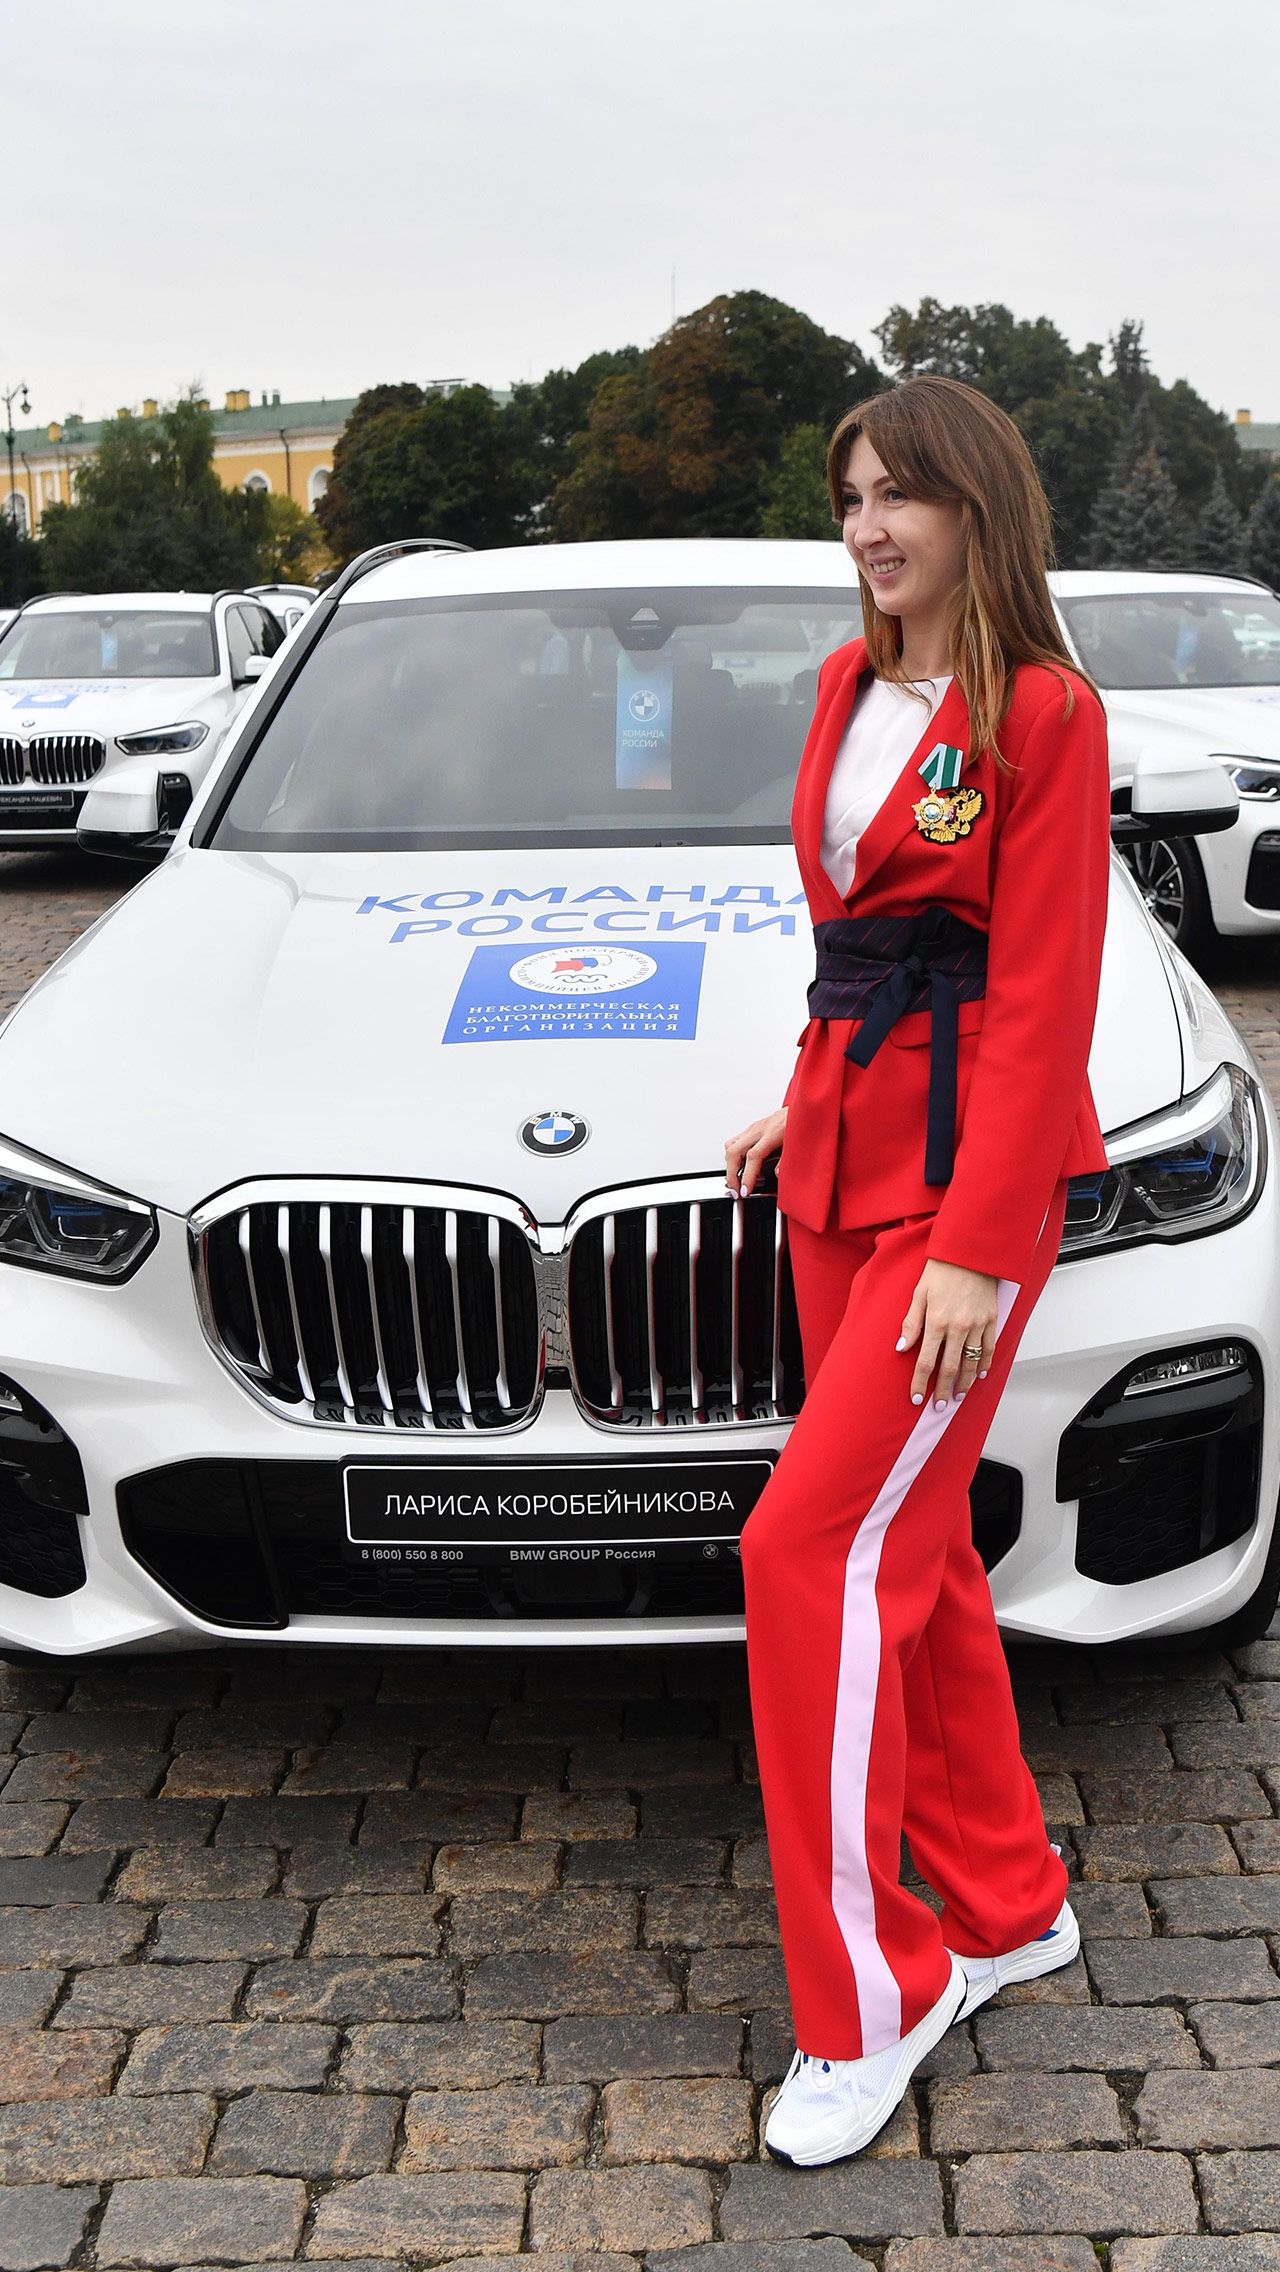 Согласно сложившейся традиции, российские спортсмены получали за олимпийские медали не только призовые деньги, но и роскошные автомобили от Фонда поддержки олимпийцев.